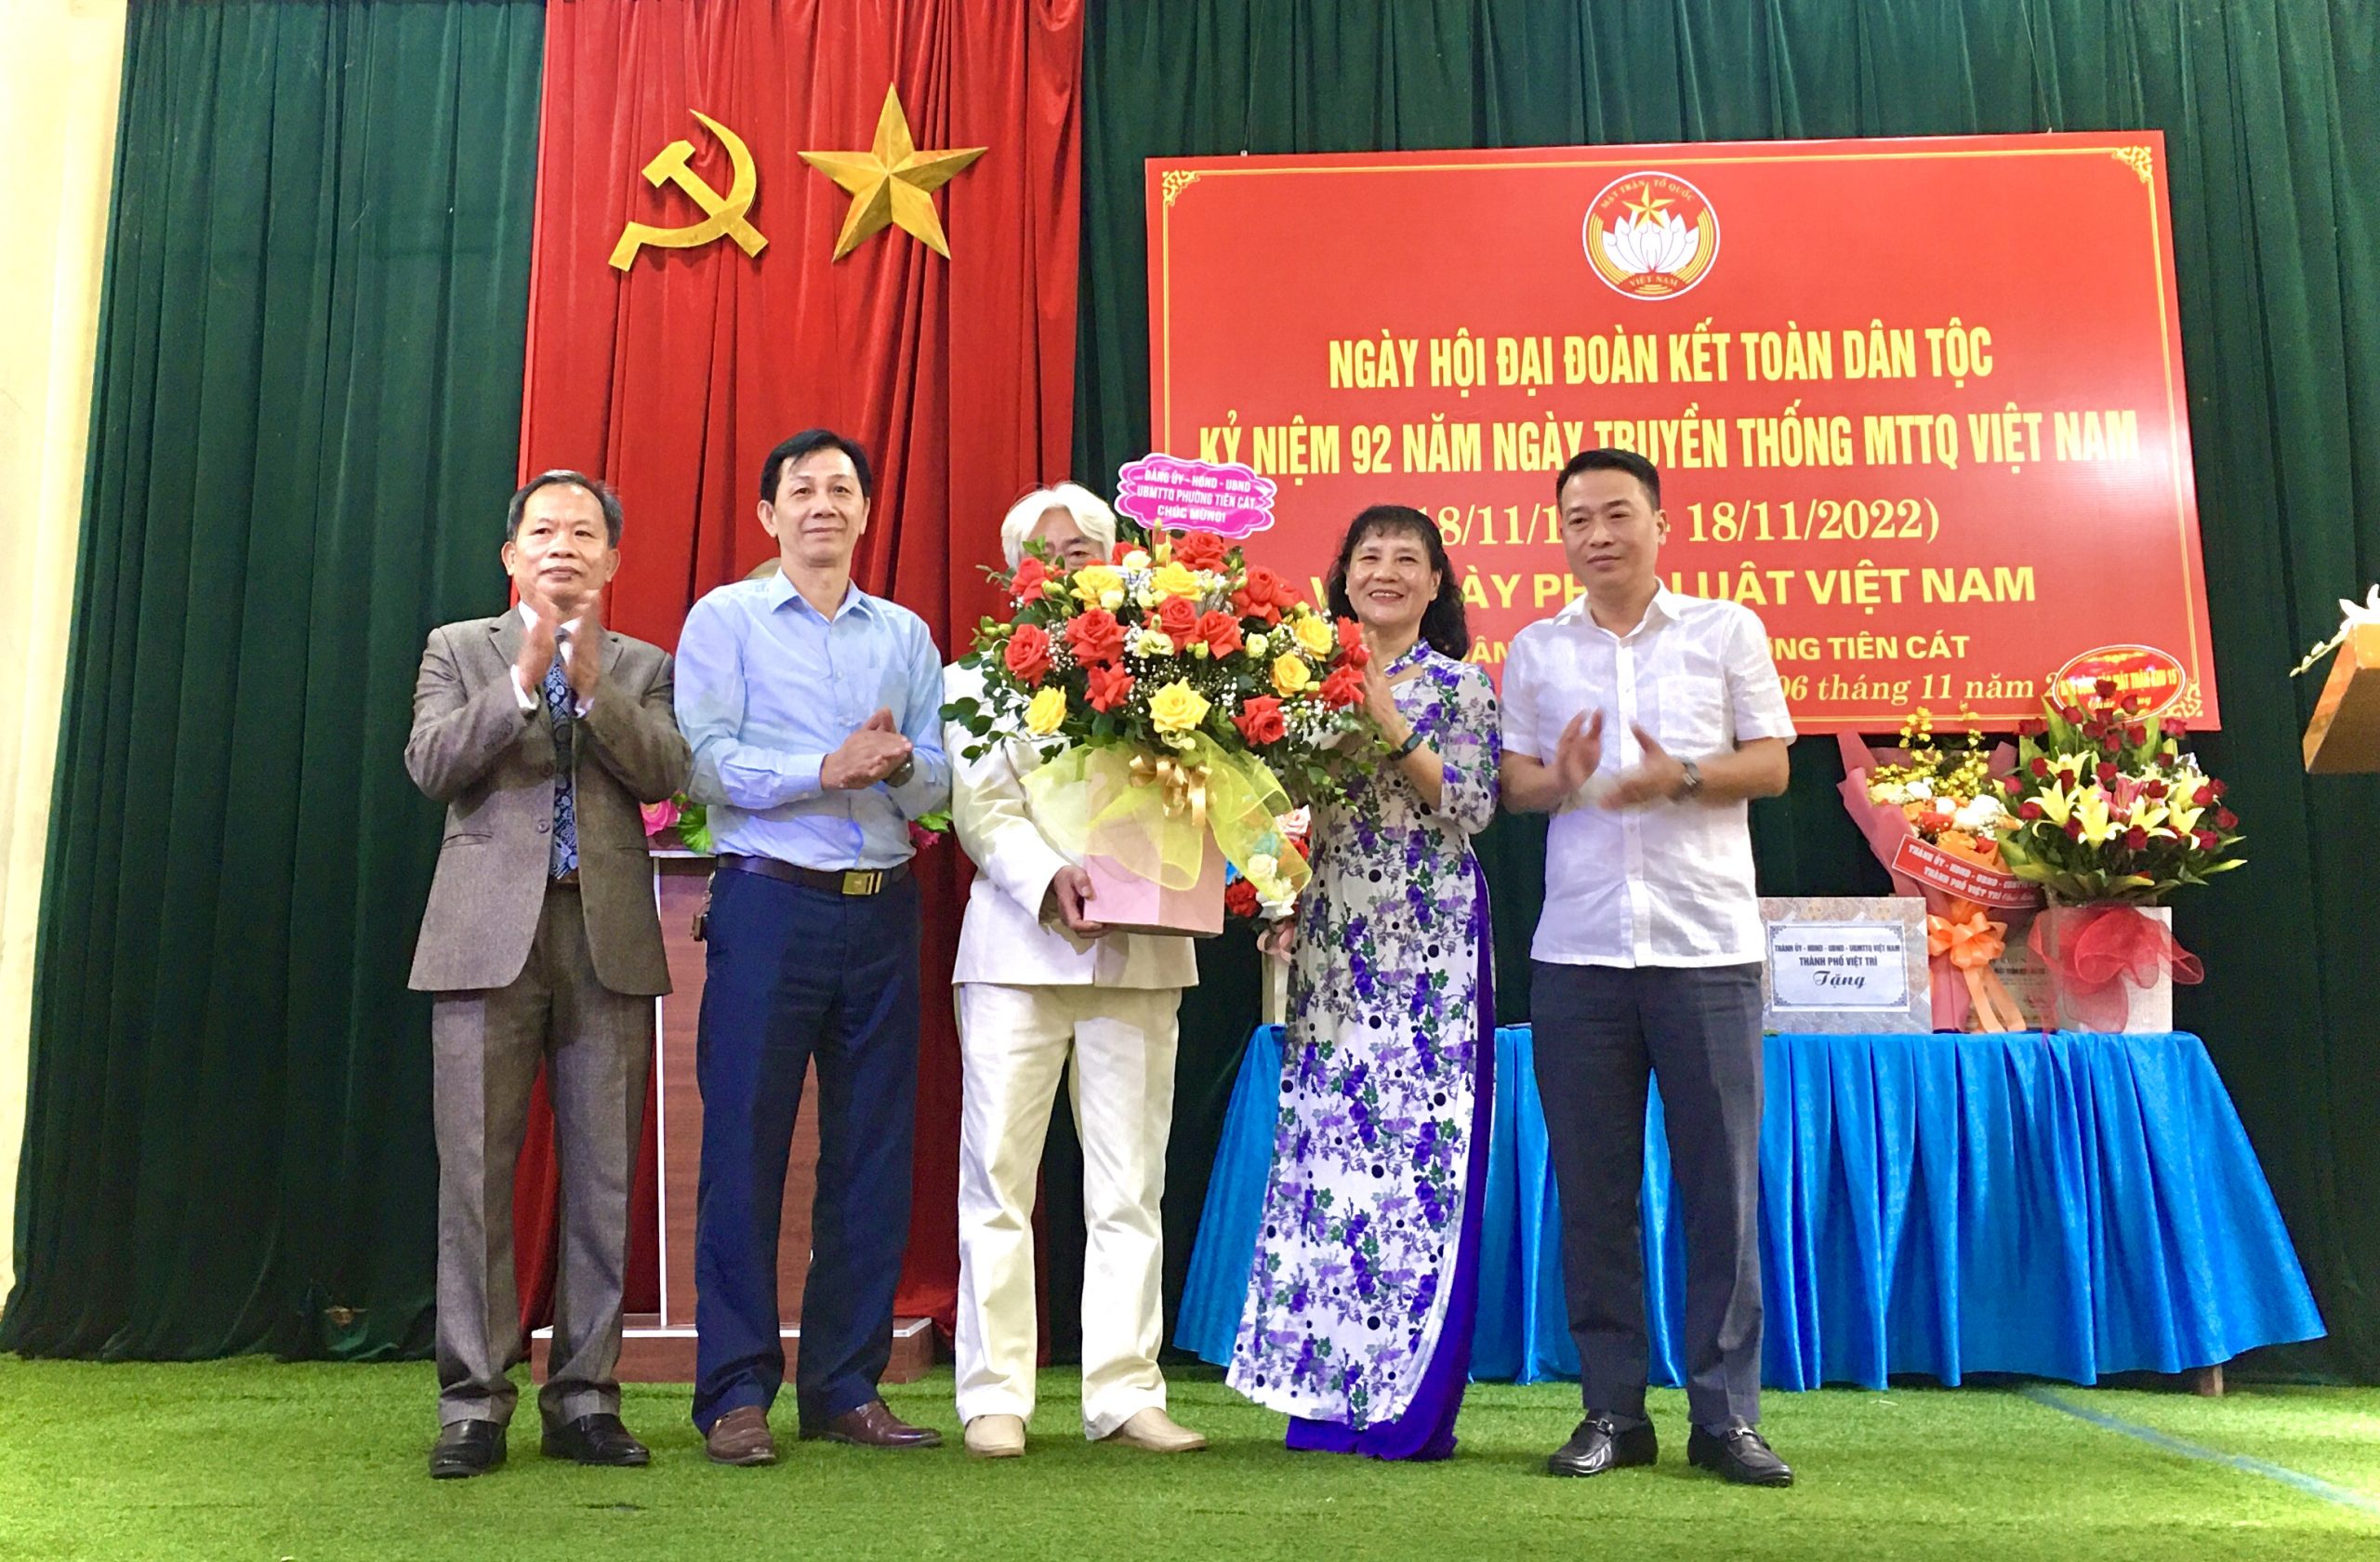 Ngày hội Đại đoàn kết toàn dân tộc, kỷ niệm 92 năm ngày Truyền thống MTTQ Việt Nam (18/11/1930 – 18/11/2022)